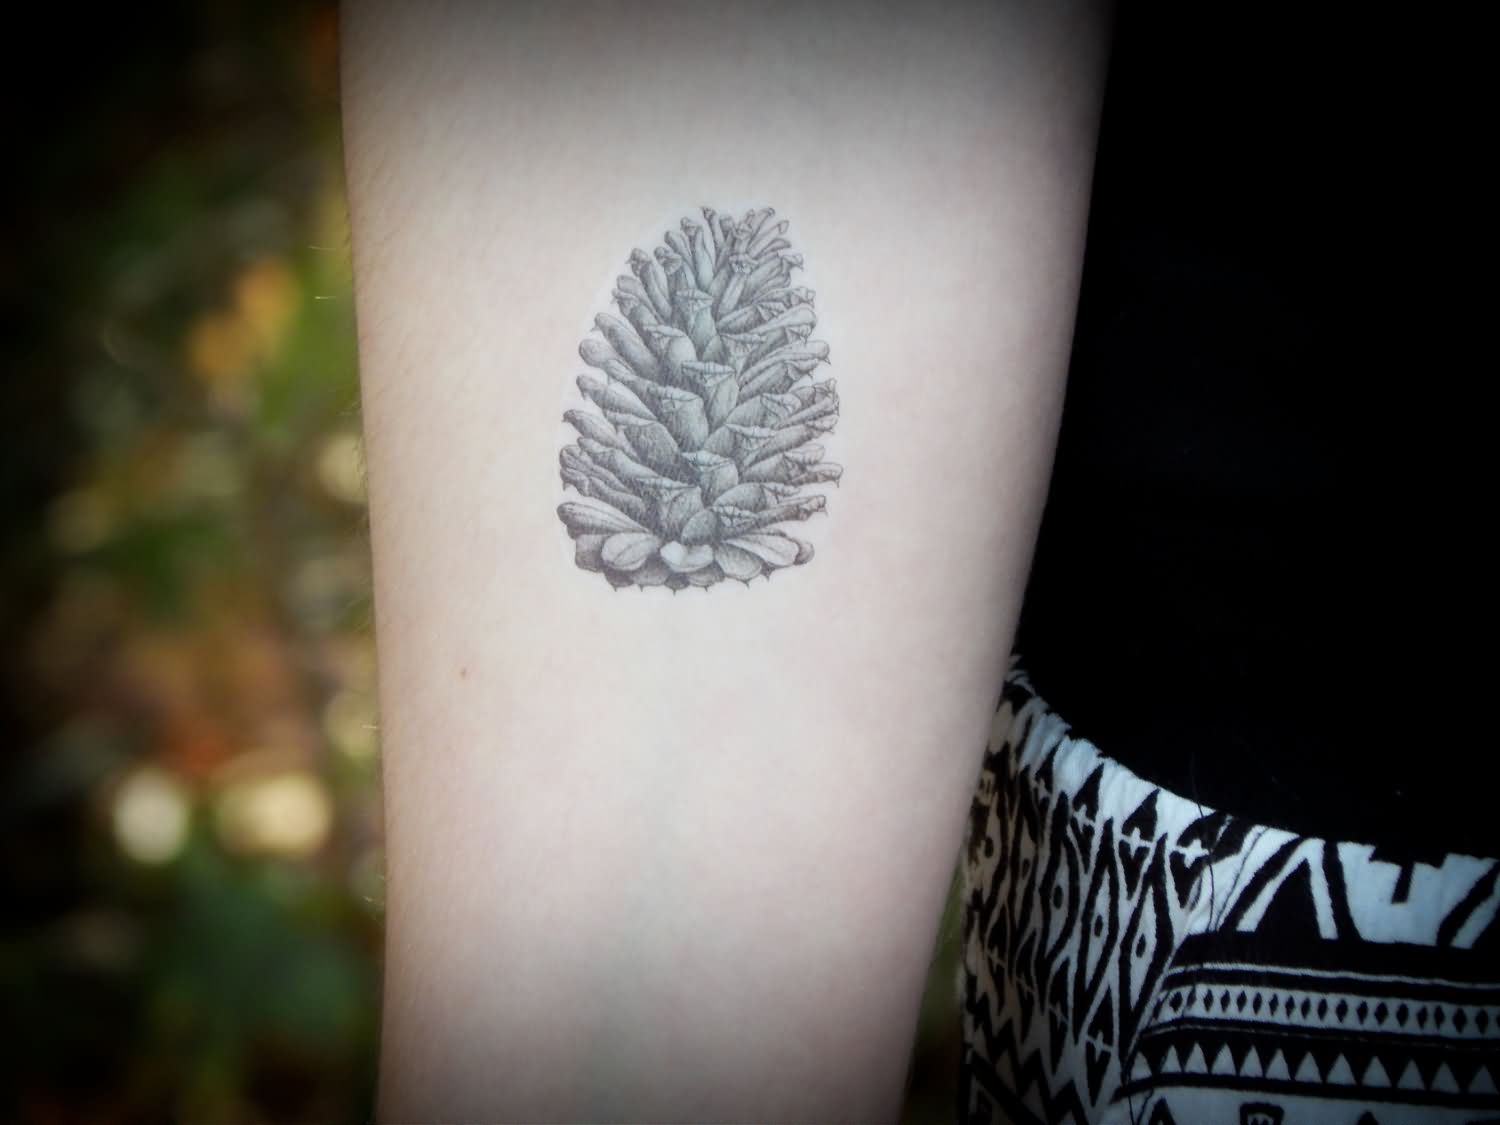 9. Pine cone tattoo designs - wide 10